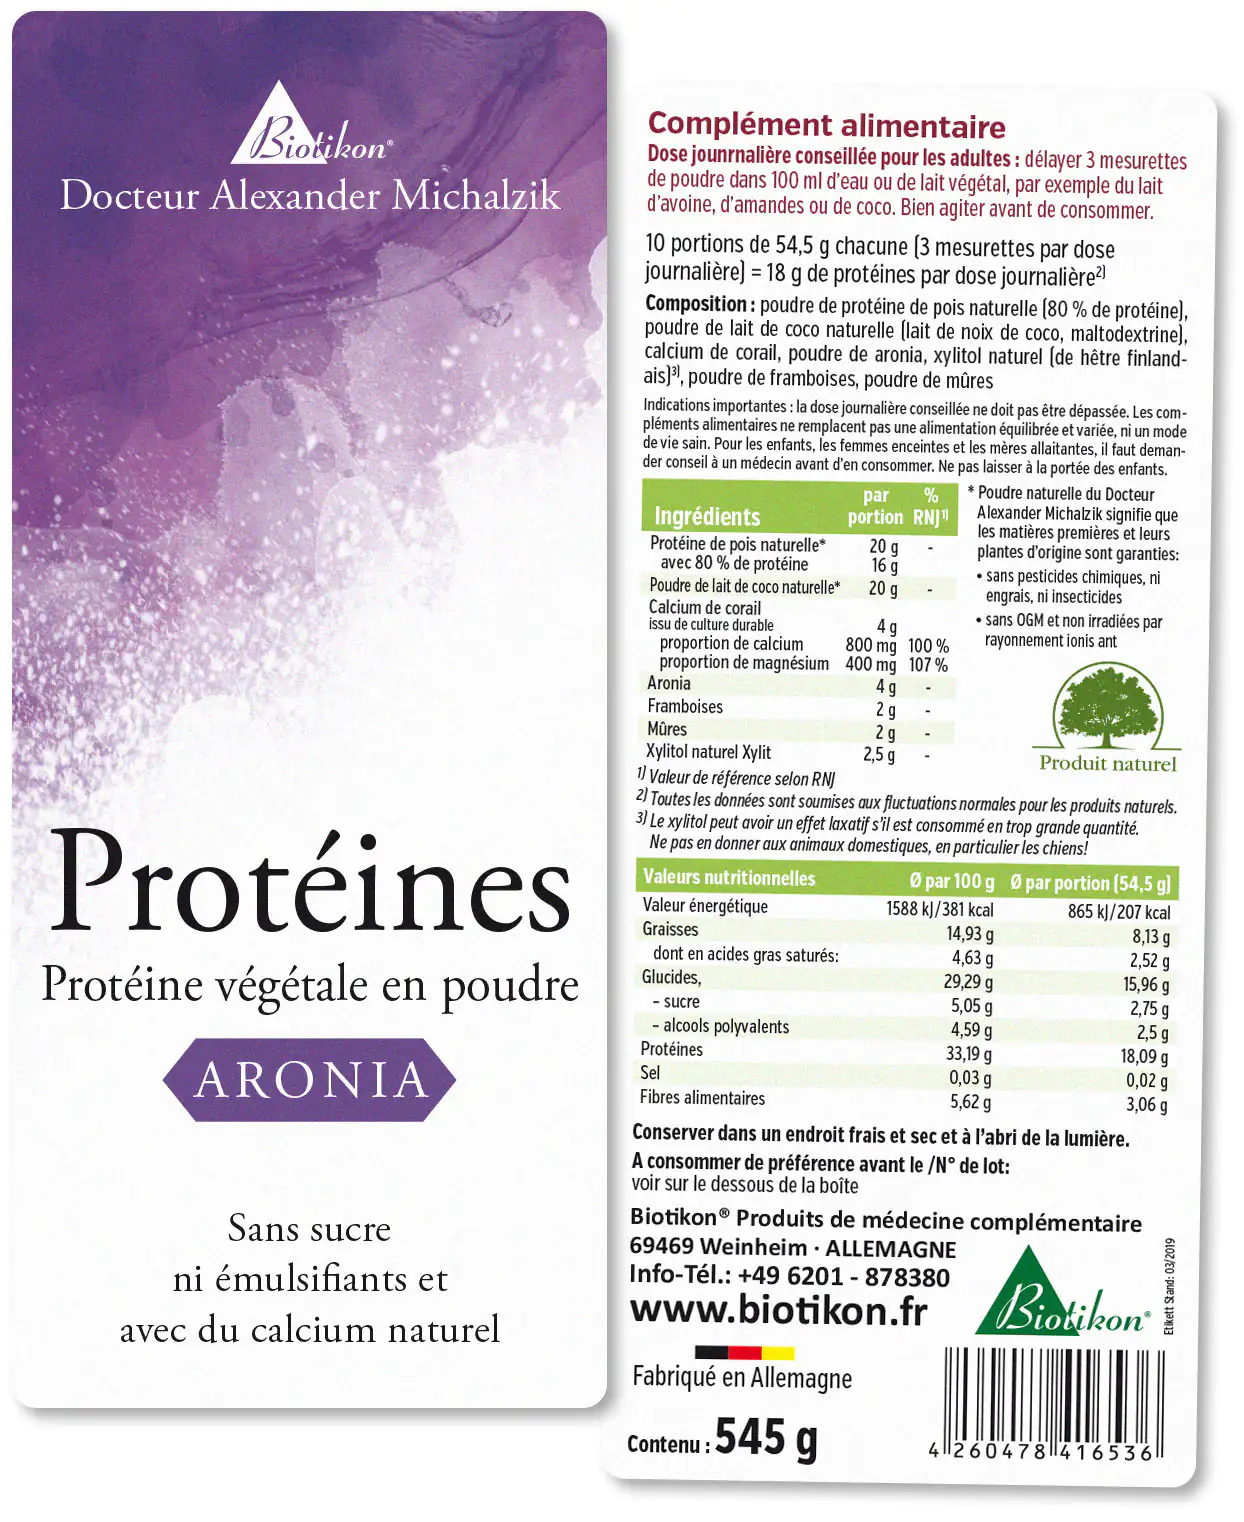 Protéines - en lot de 3, 2x Aronia + Cacao